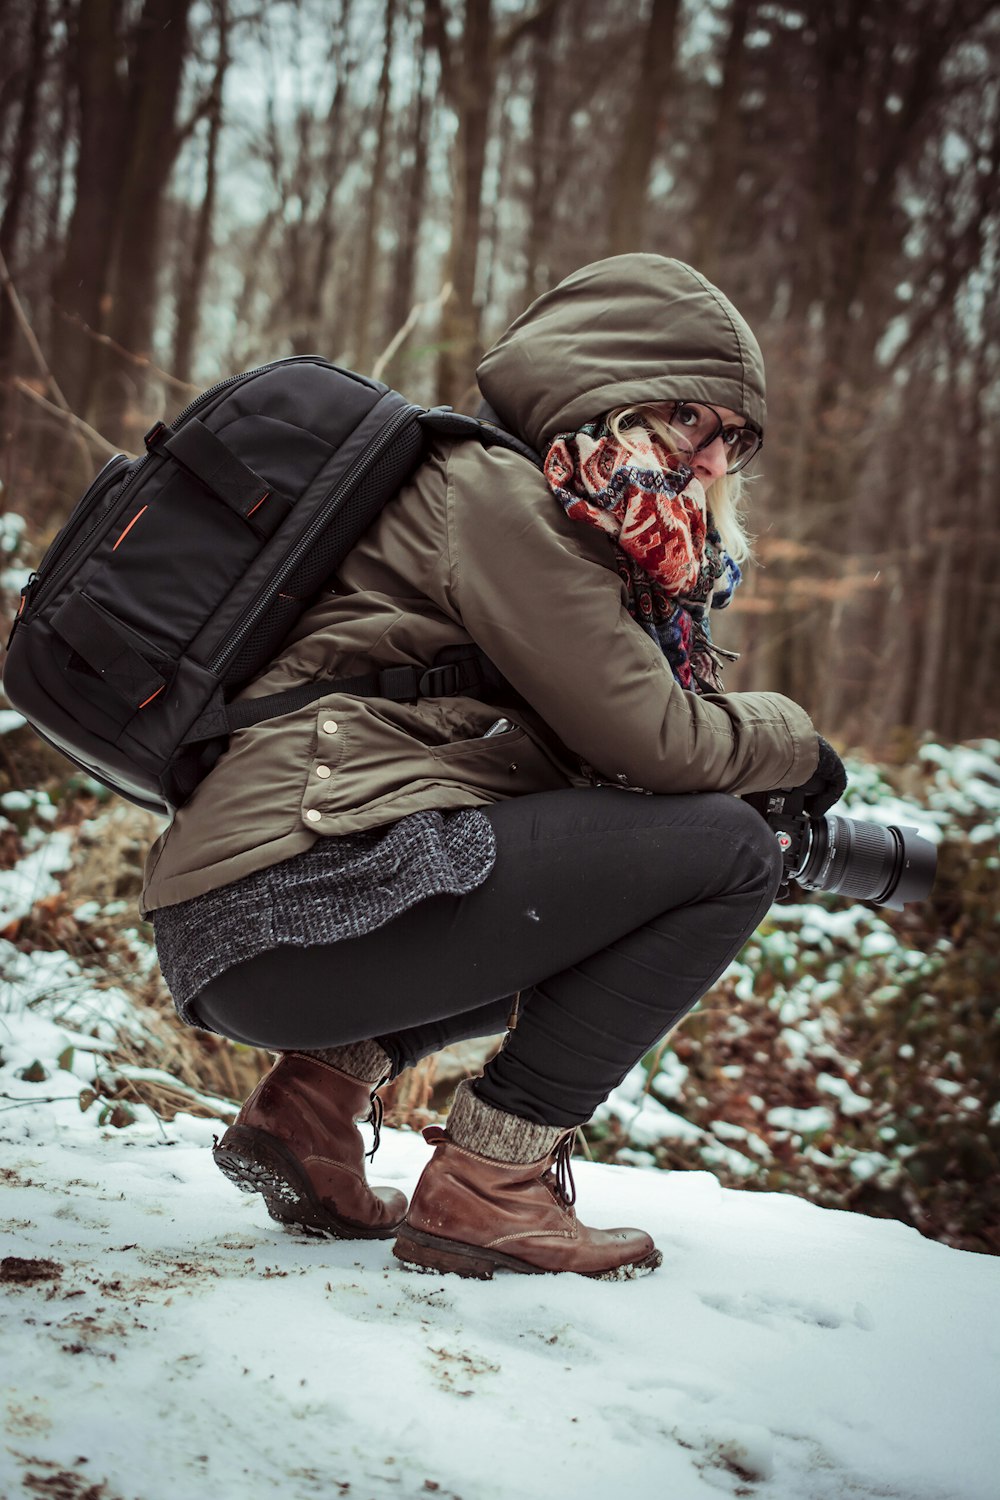 donna in giacca con cappuccio marrone che tiene la macchina fotografica mentre si accovaccia sul terreno coperto di neve durante il giorno